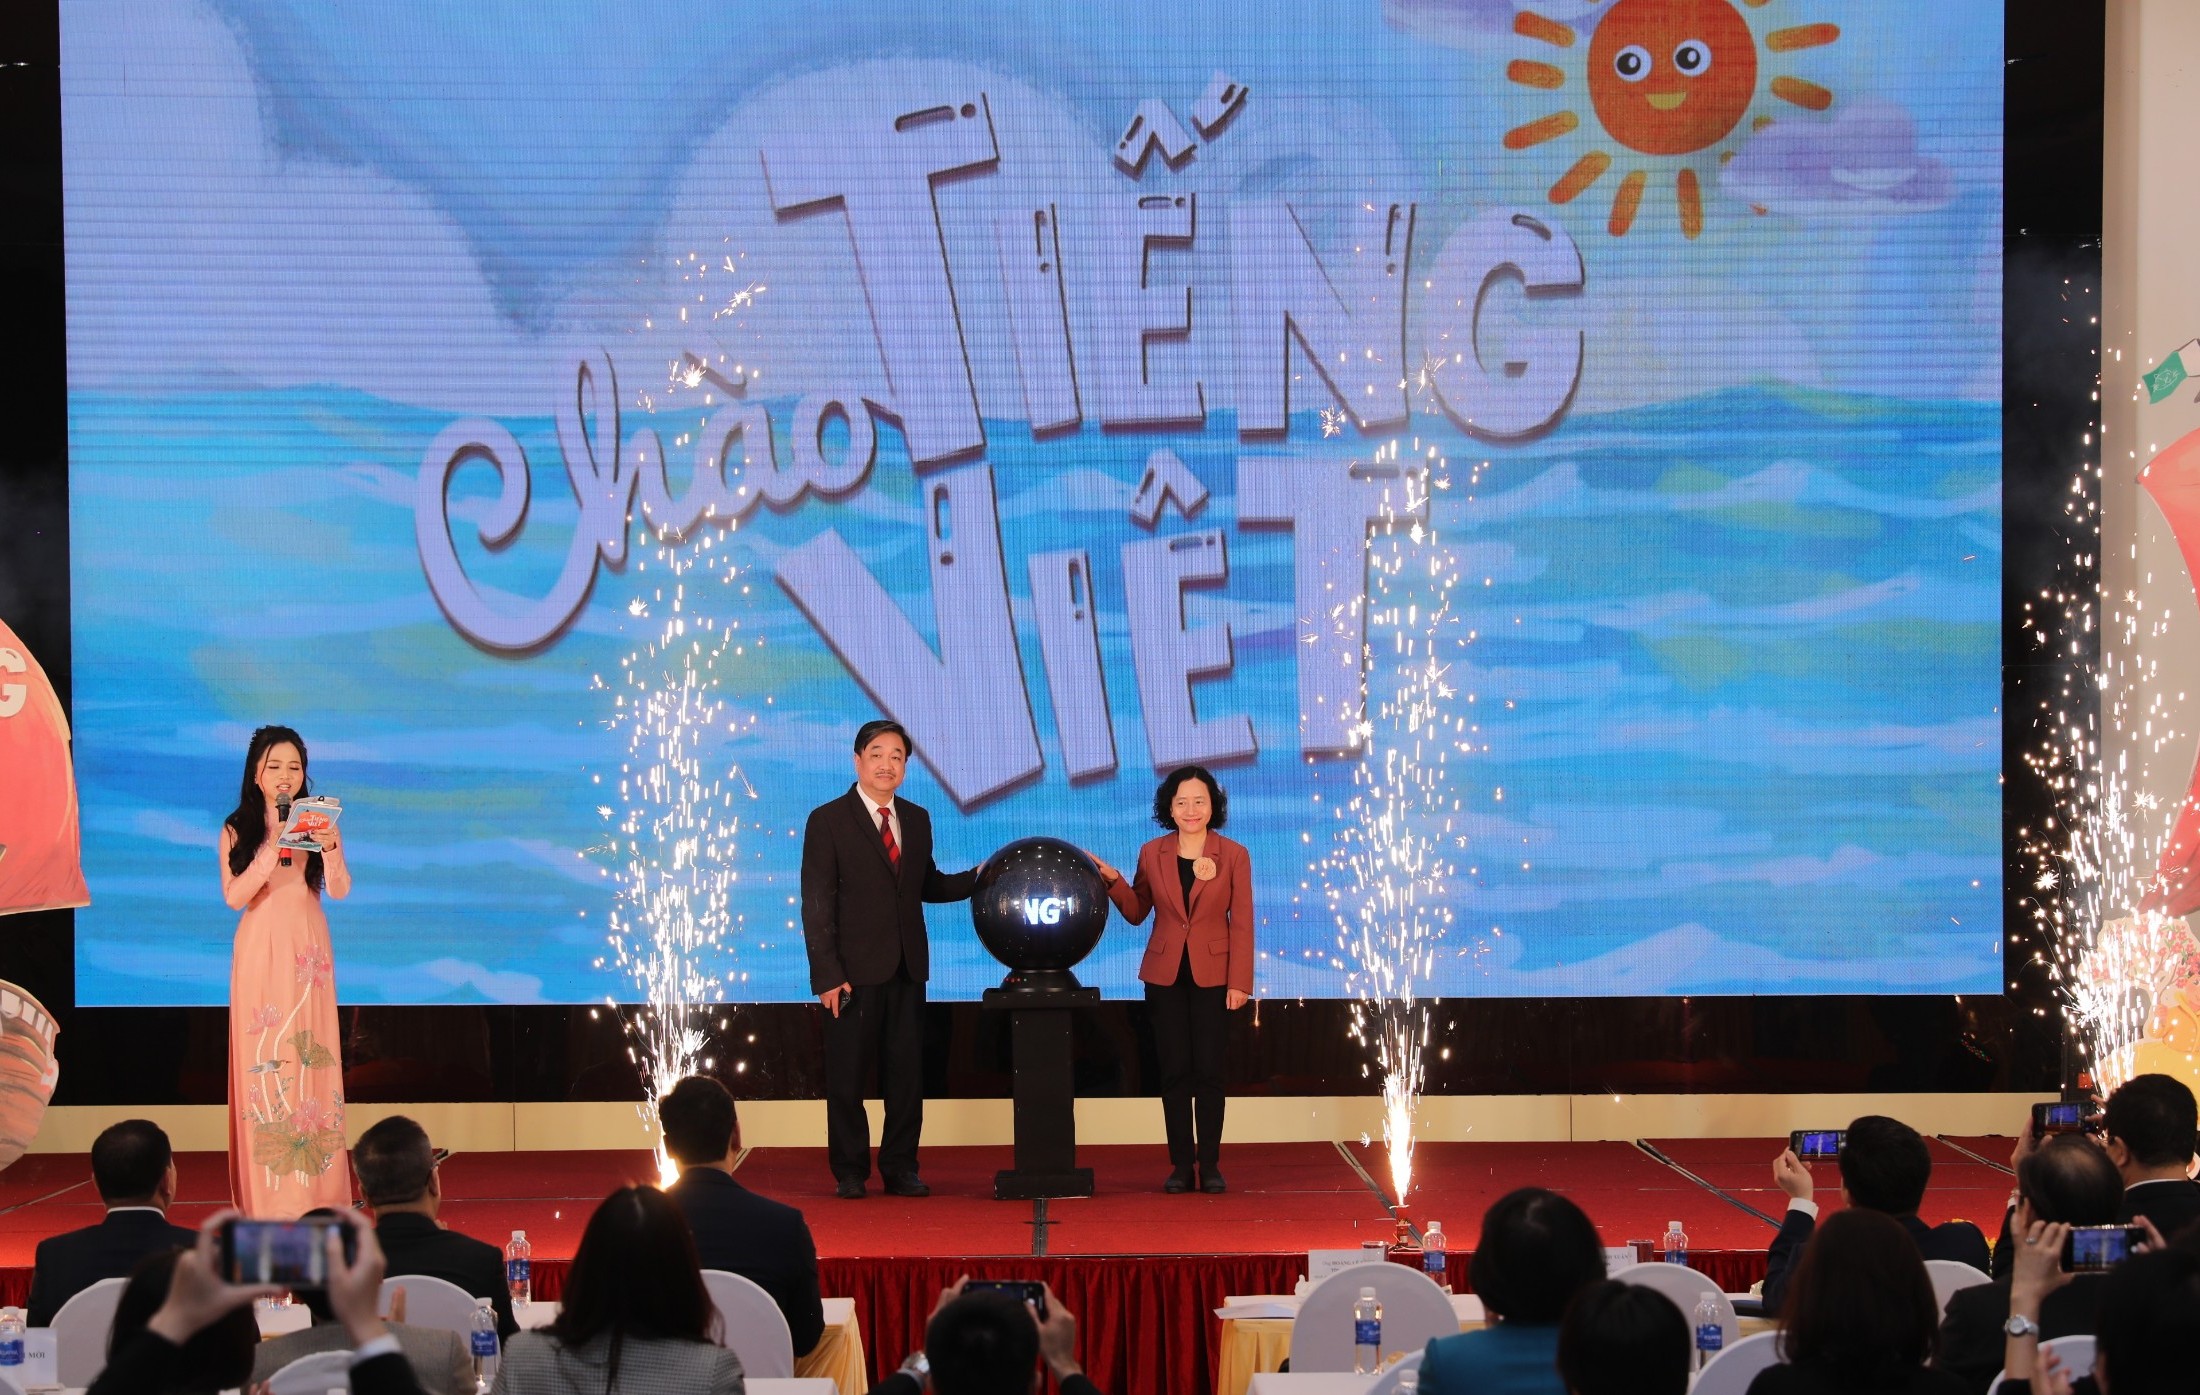 Ra mắt chương trình truyền hình Chào tiếng Việt và phát động cuộc thi tìm kiếm sứ giả tiếng Việt ở nước ngoài năm 2023.